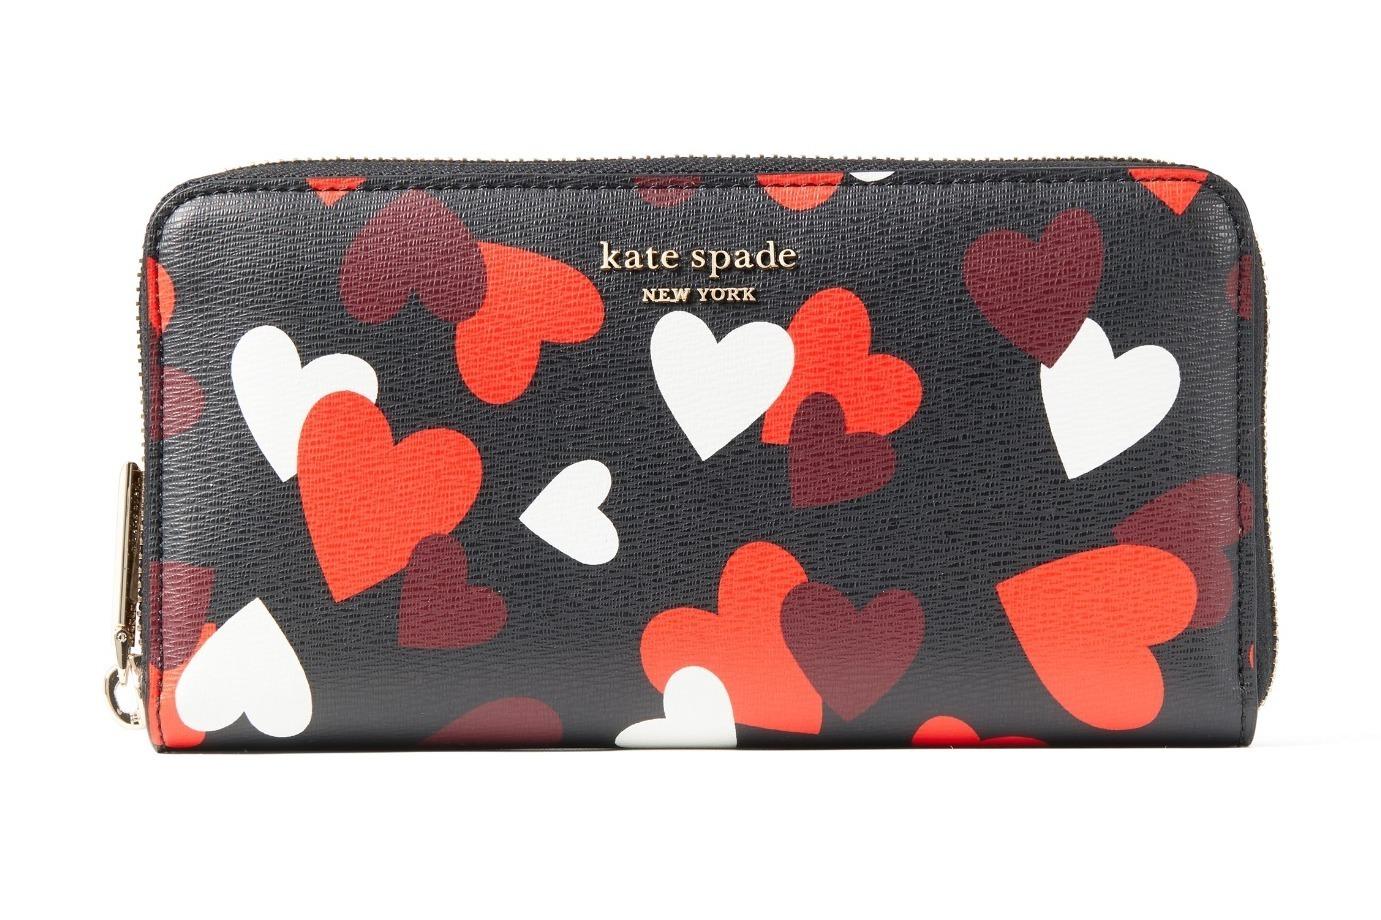 ケイト・スペード2021年バレンタインギフト、“ハート”モチーフの財布&3Dコインパース 